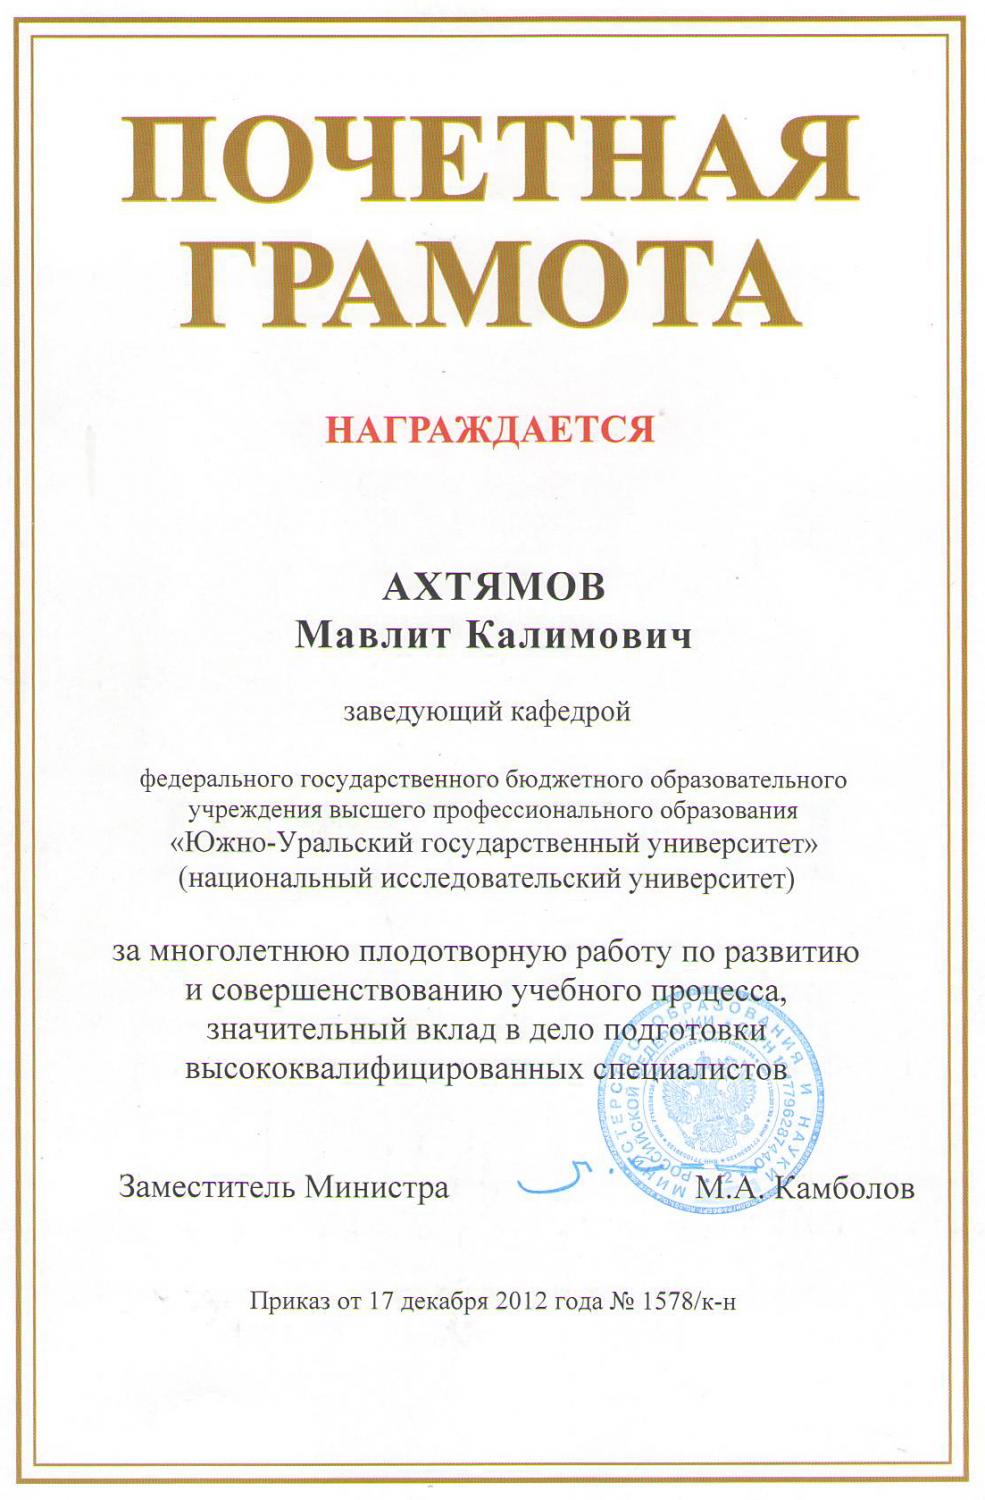 Ахтямов М.К. награжден почетной грамотой Министерства образования